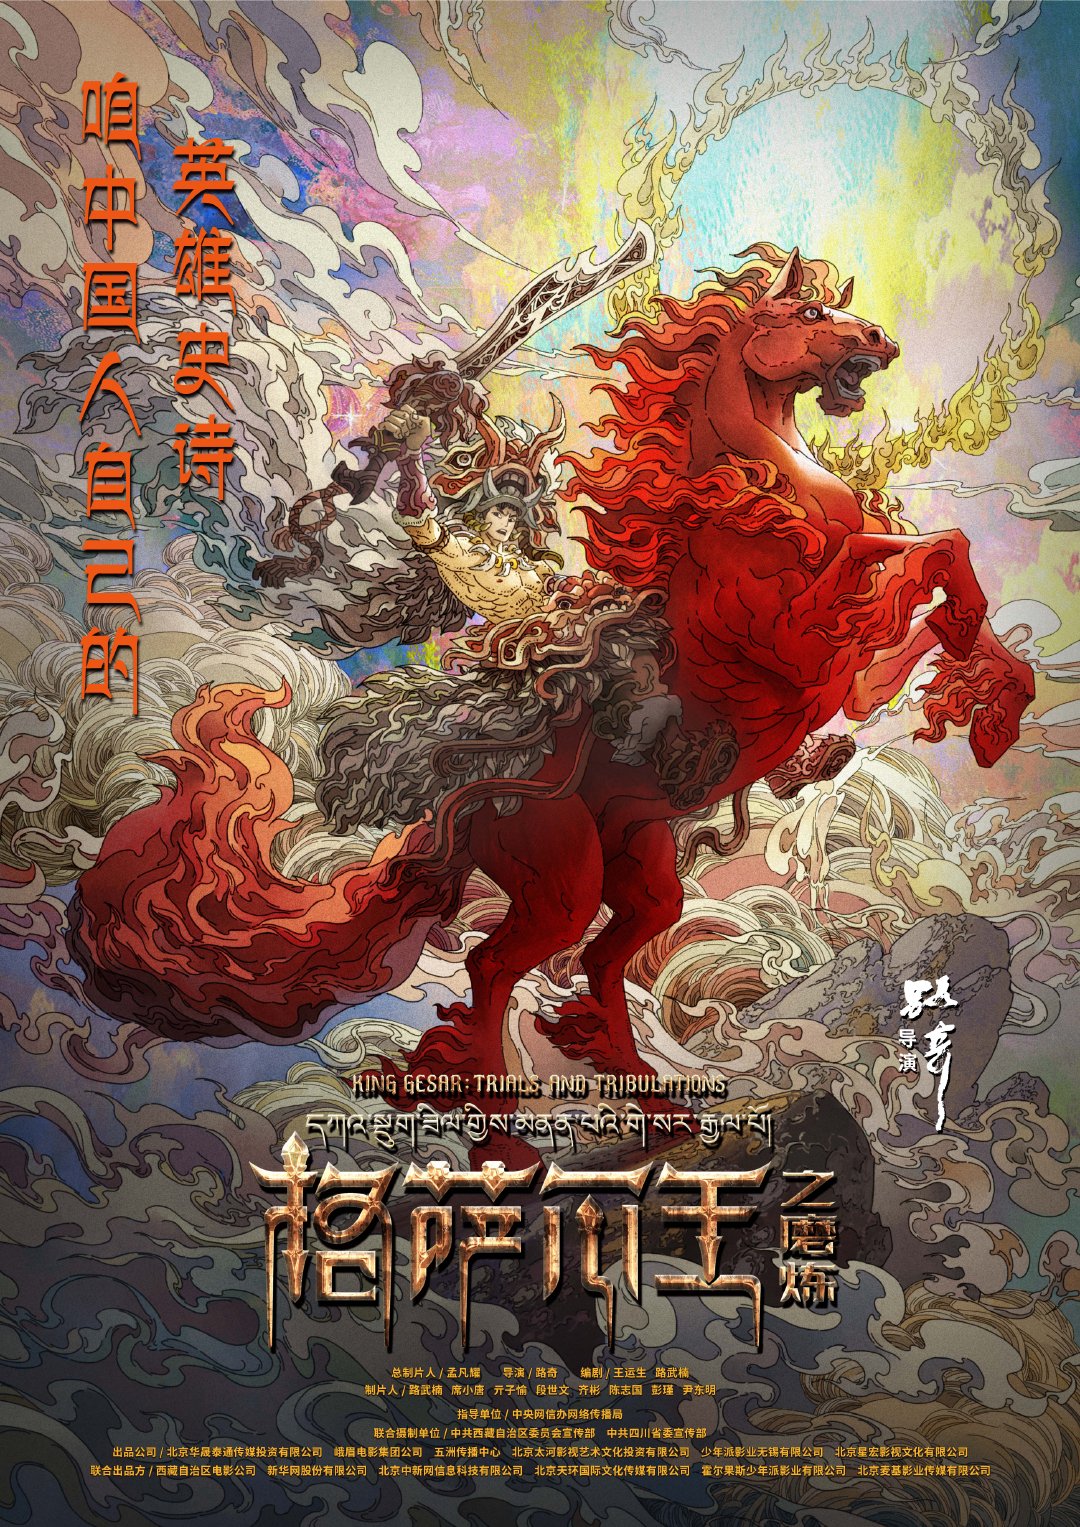 动画电影《格萨尔王之磨炼》发布首张海报。